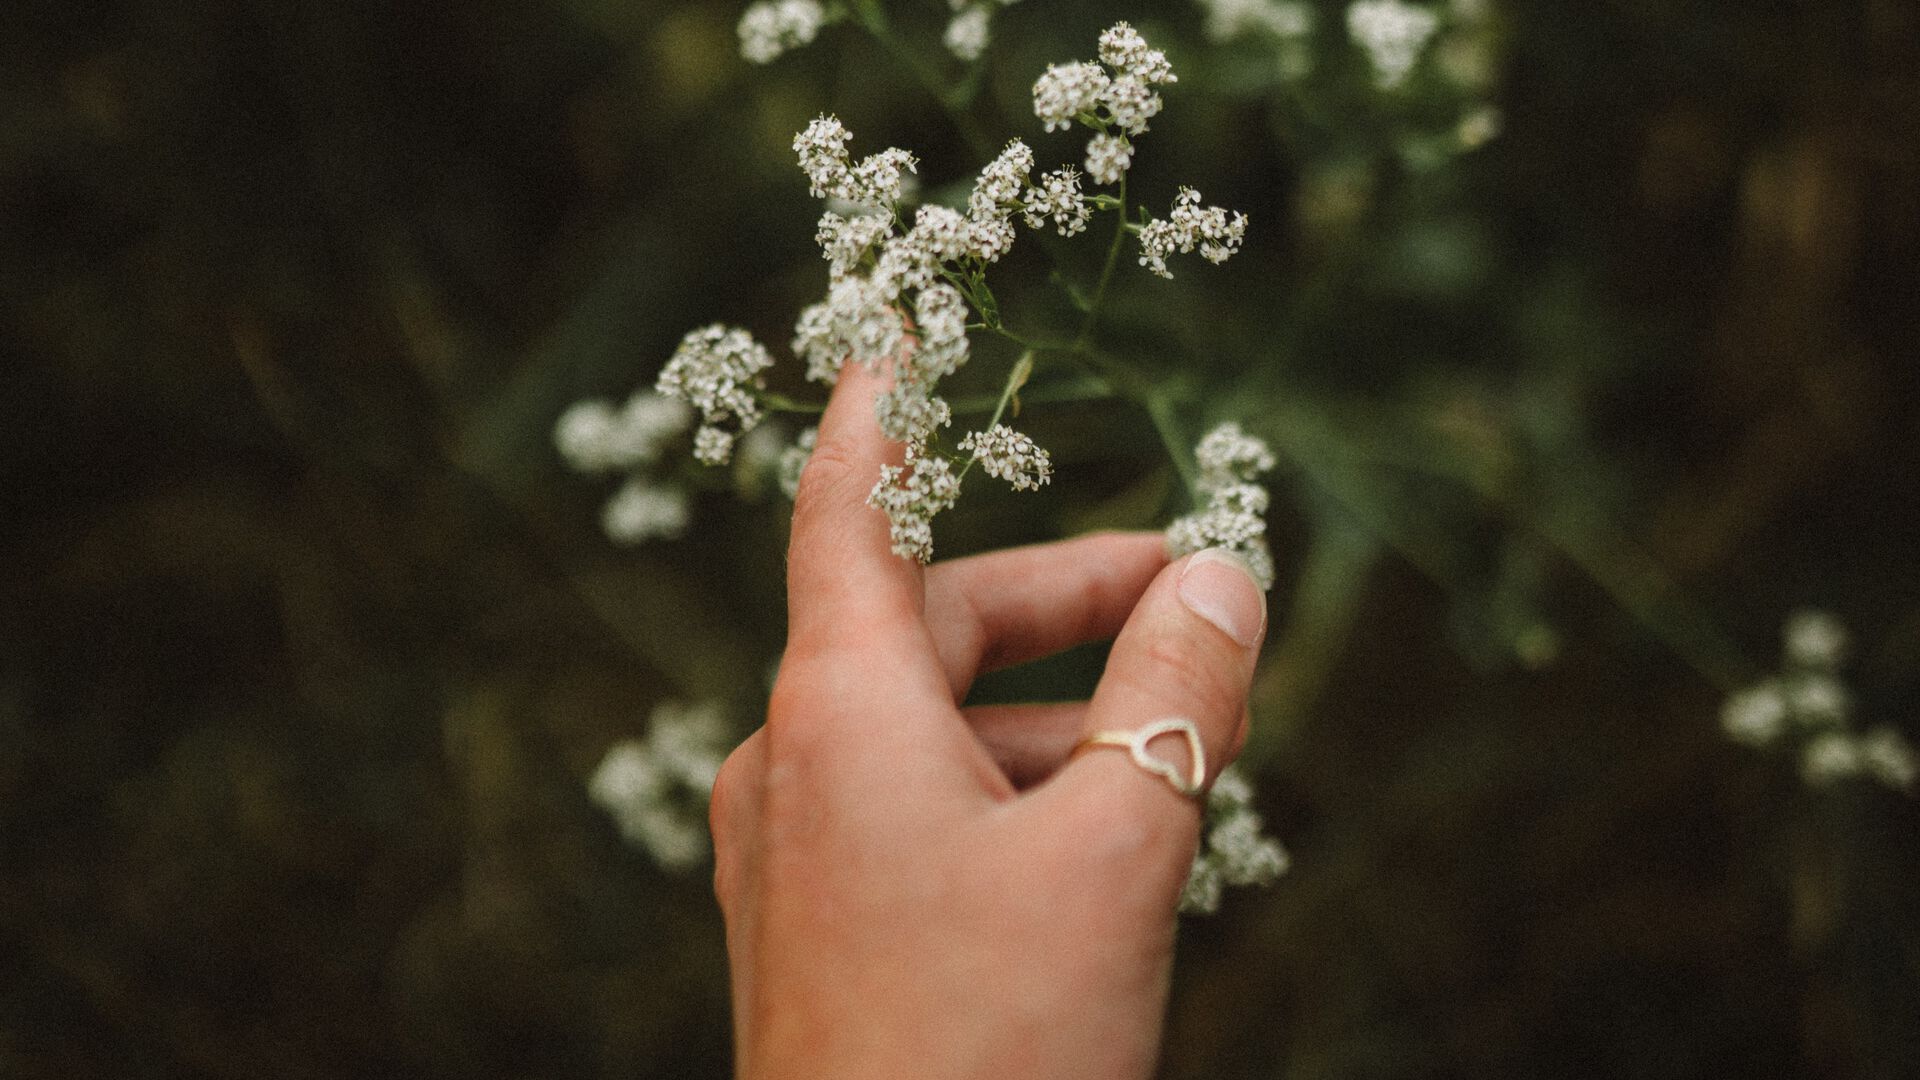 Hånd med ring som strekker seg mot en blomst. Foto